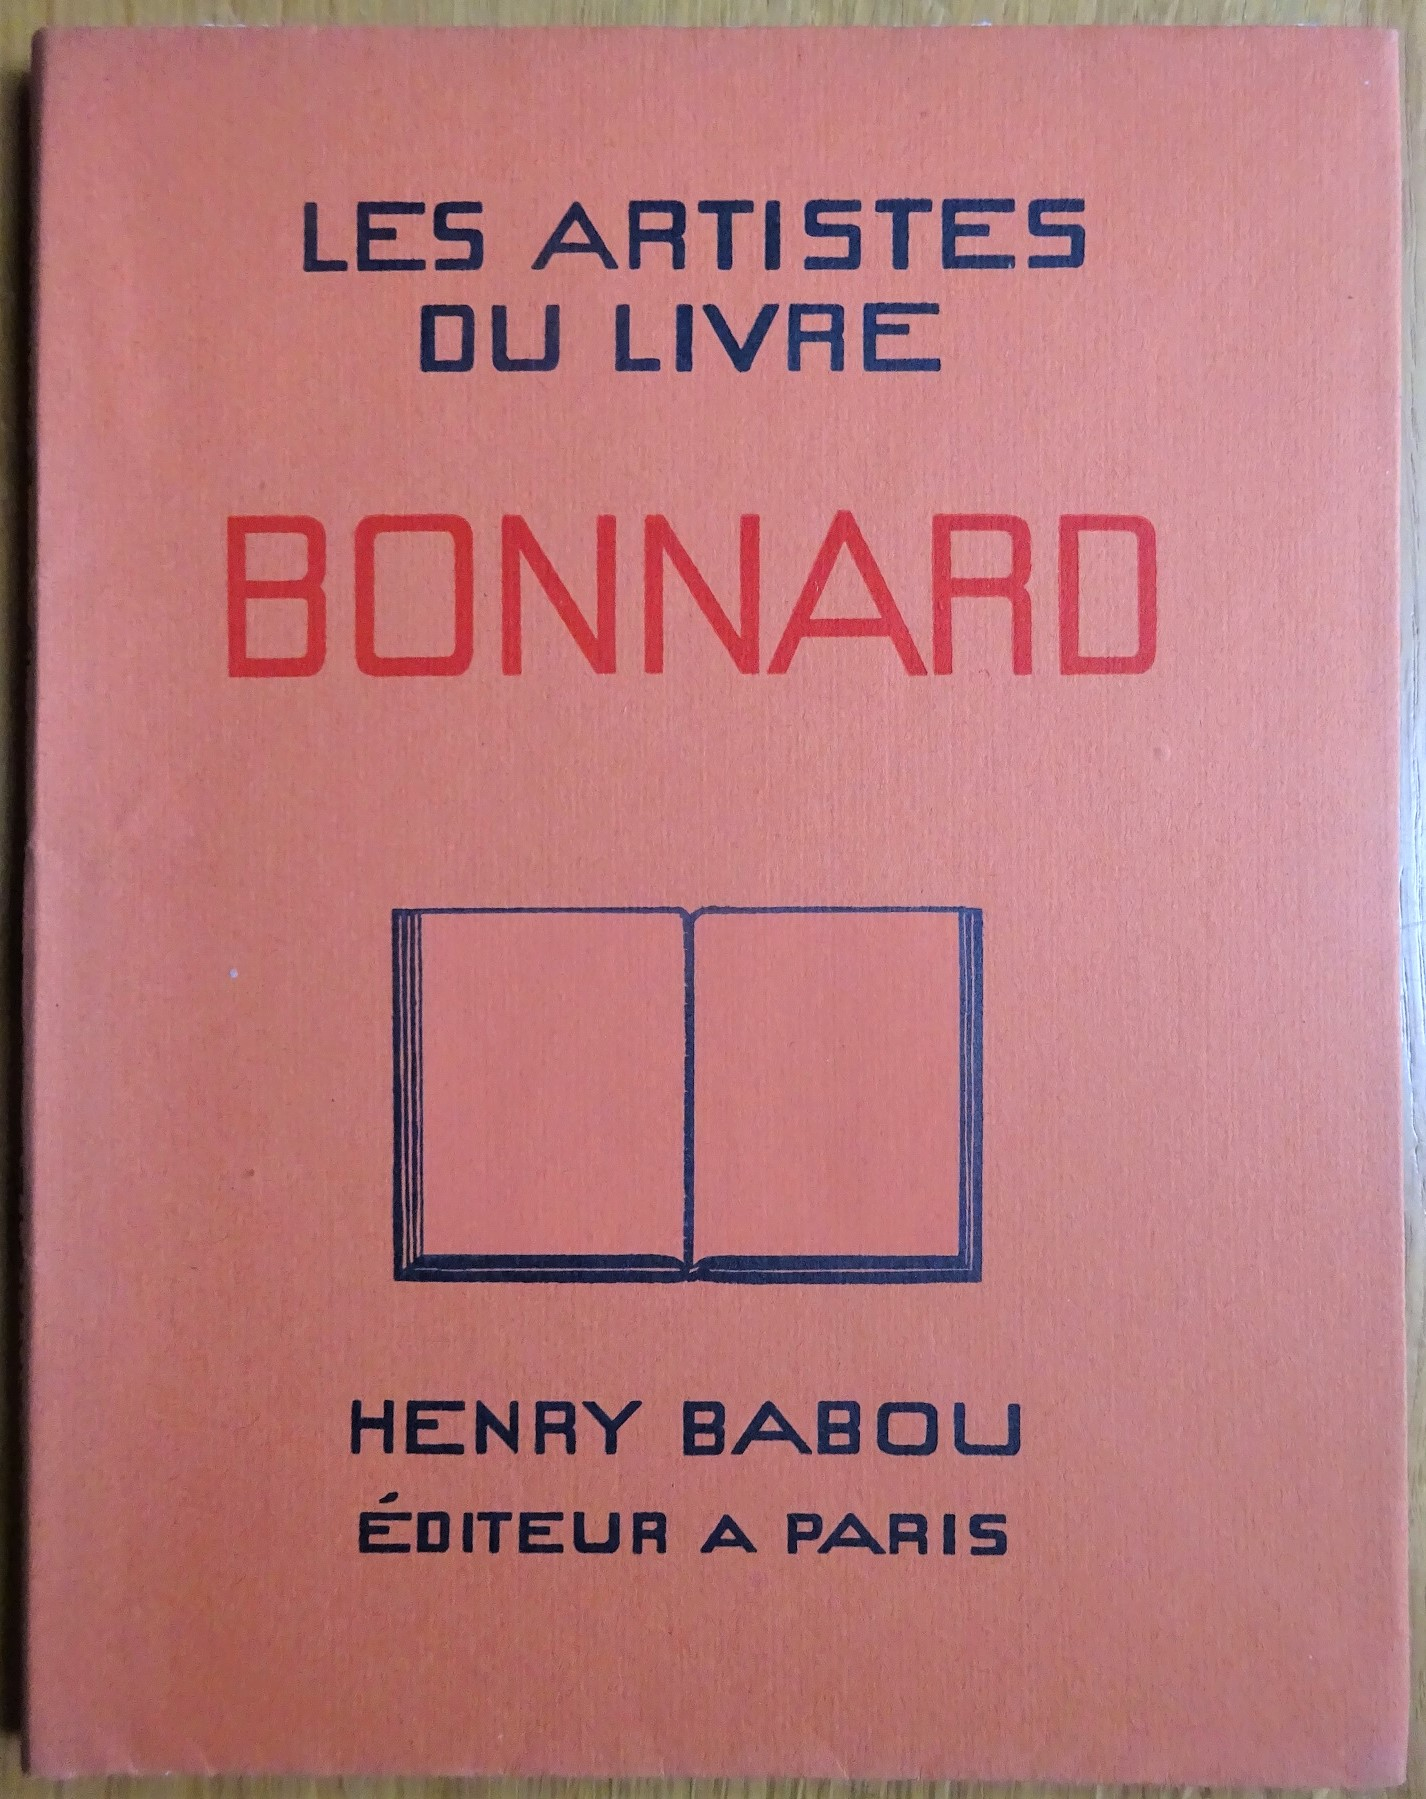 Les Artistes du livre. Pierre Bonnard